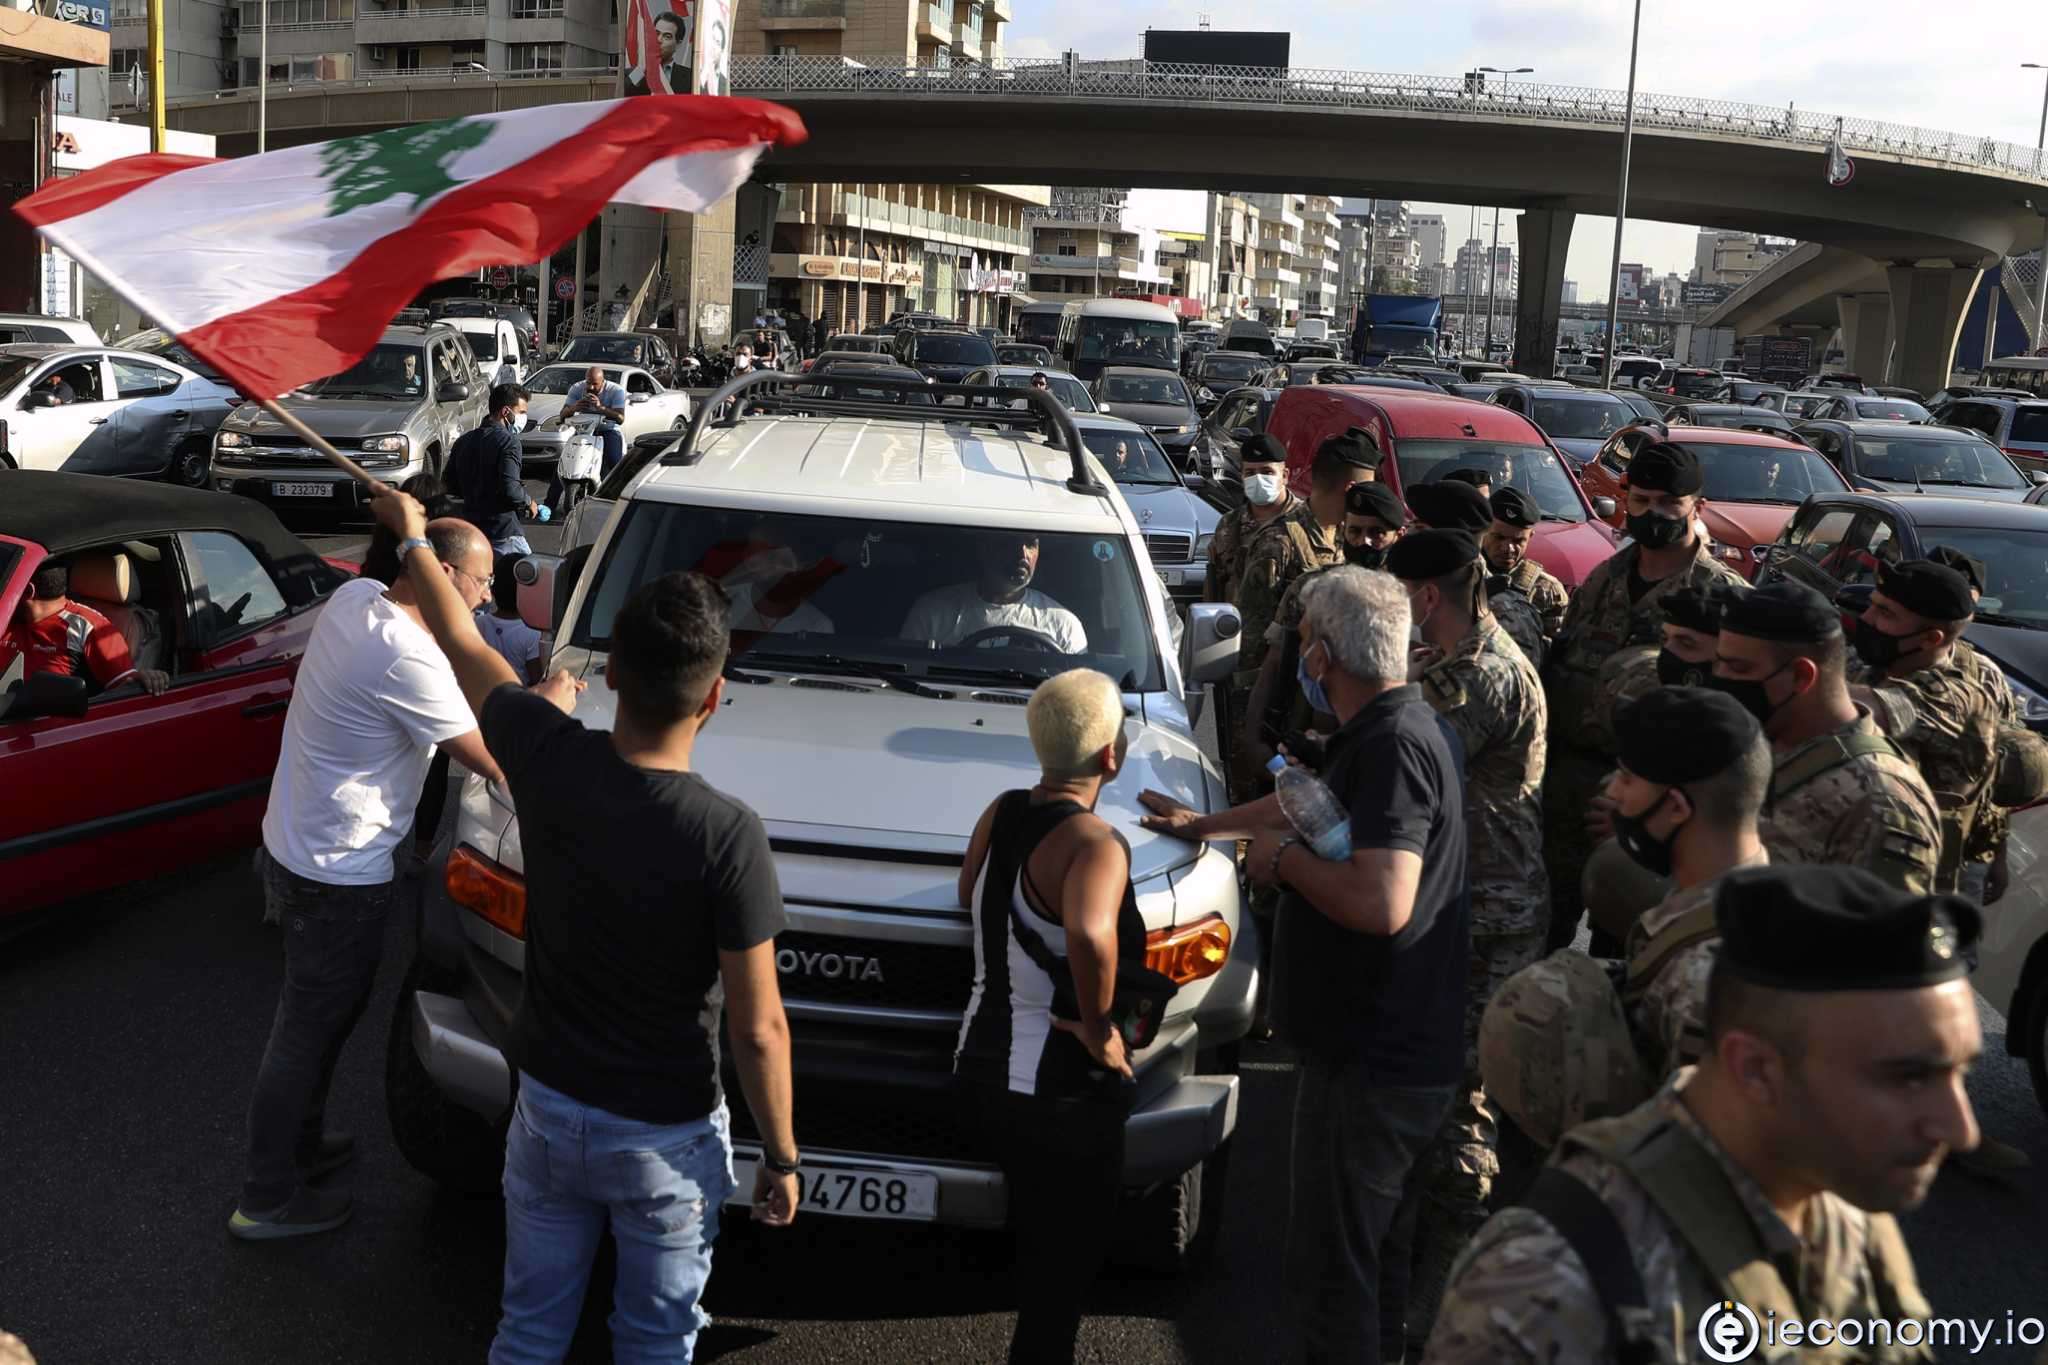 Lübnan'daki ekonomik kriz giderek daha dramatik hale geliyor